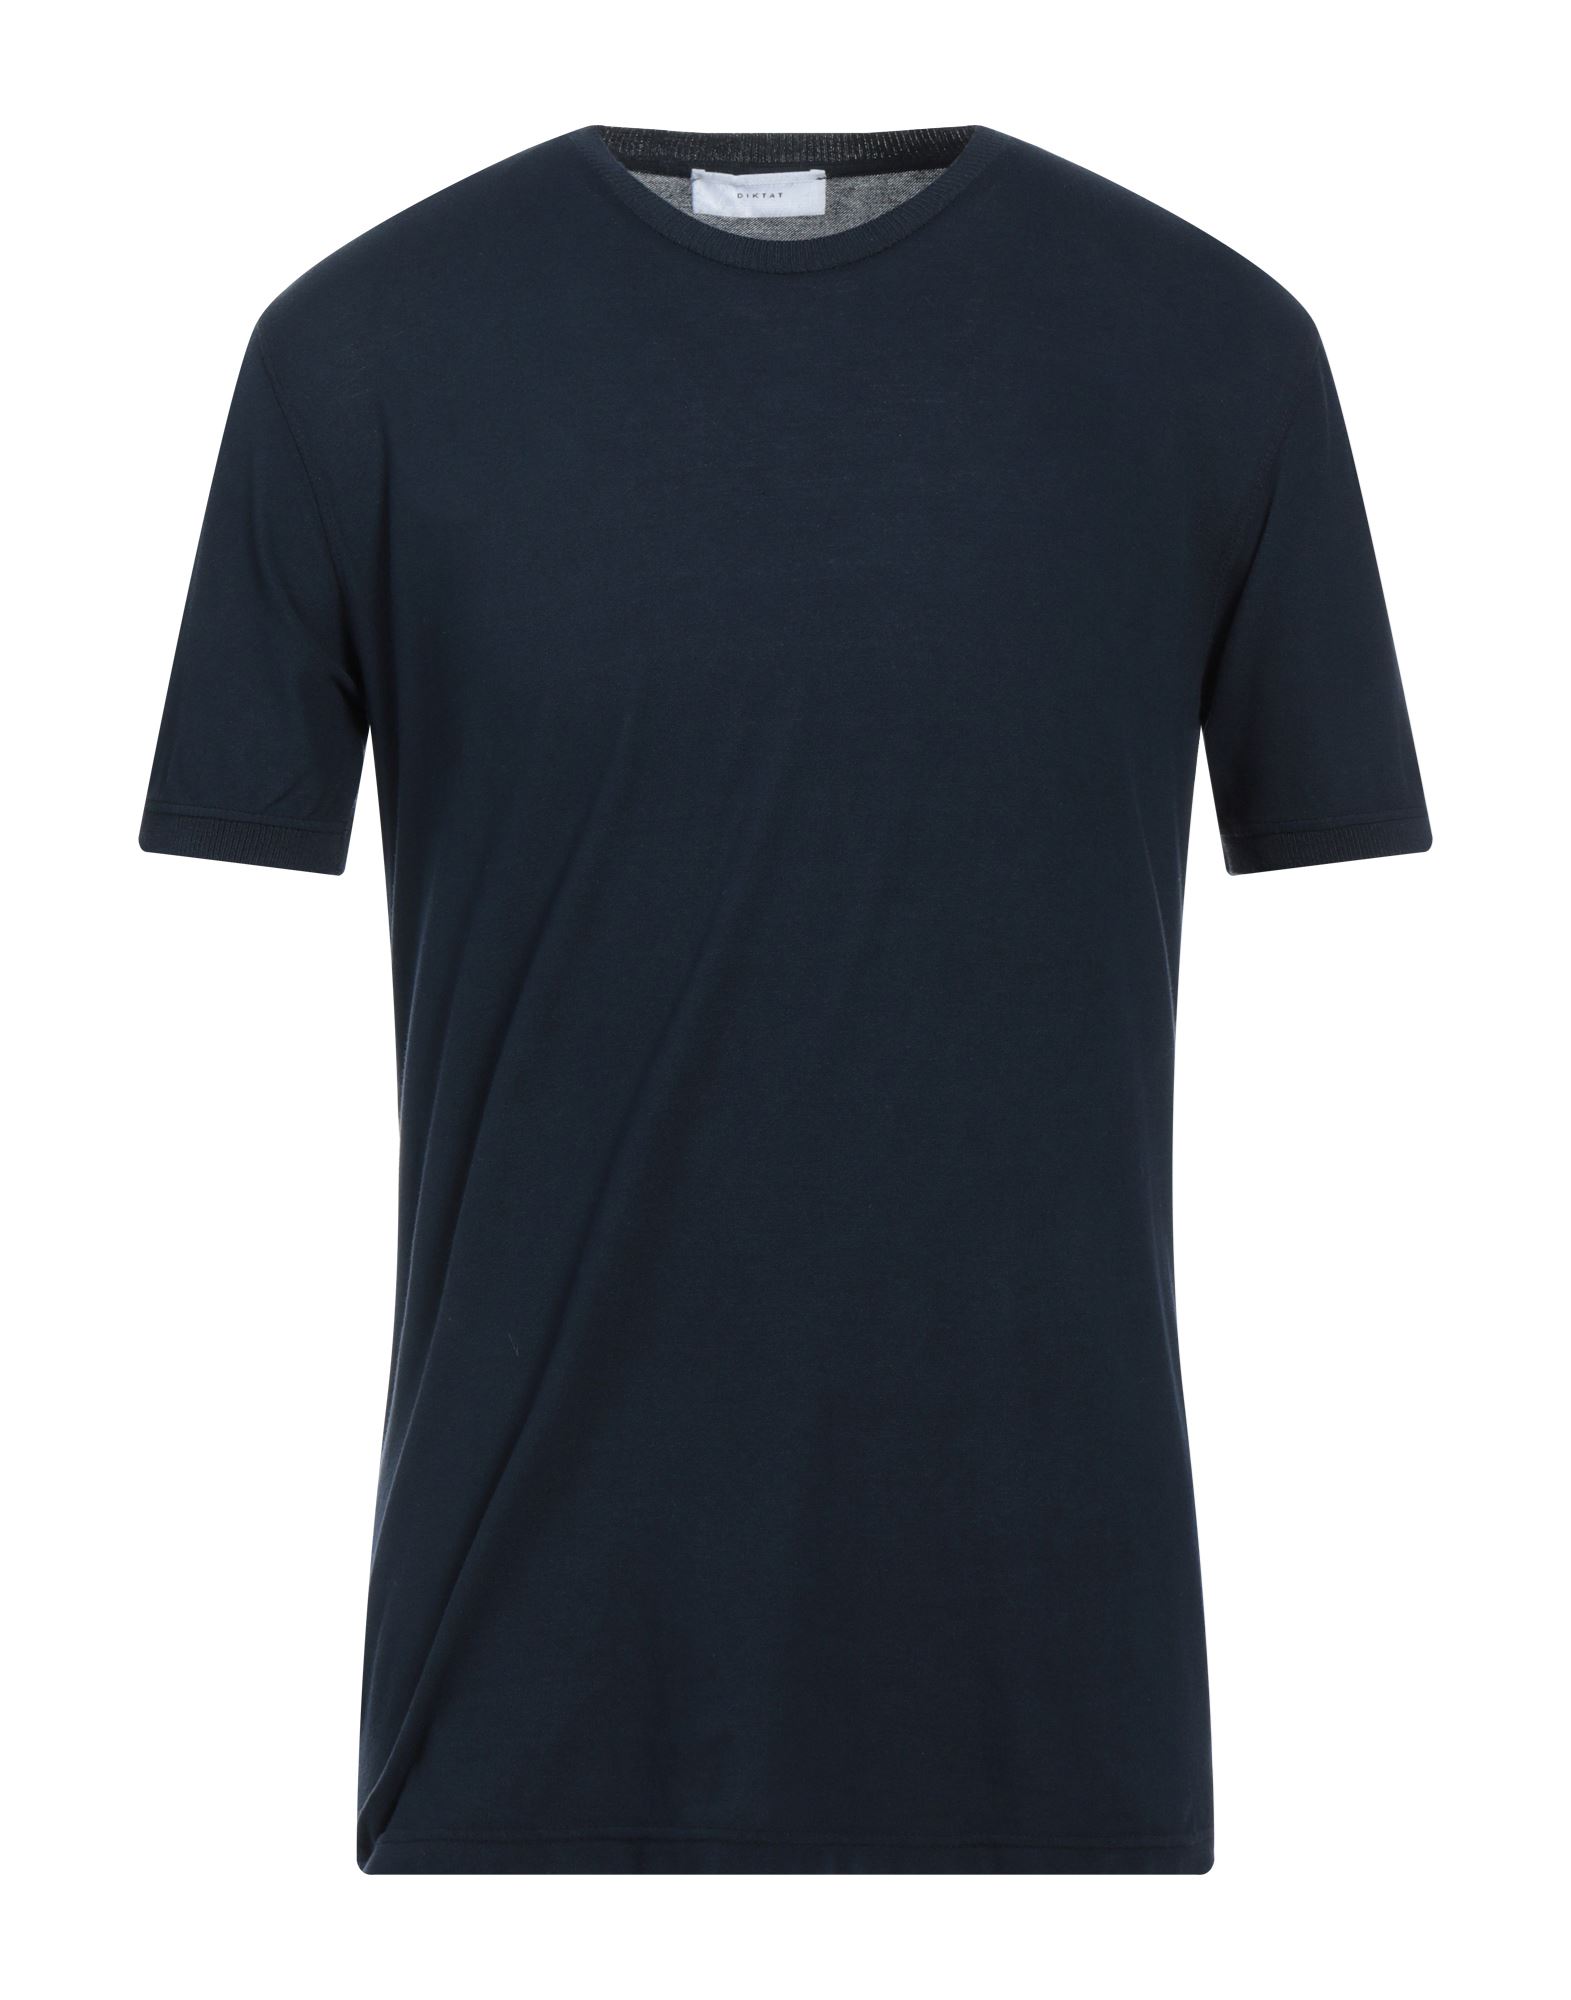 Diktat Man T-shirt Midnight Blue Size S Cotton